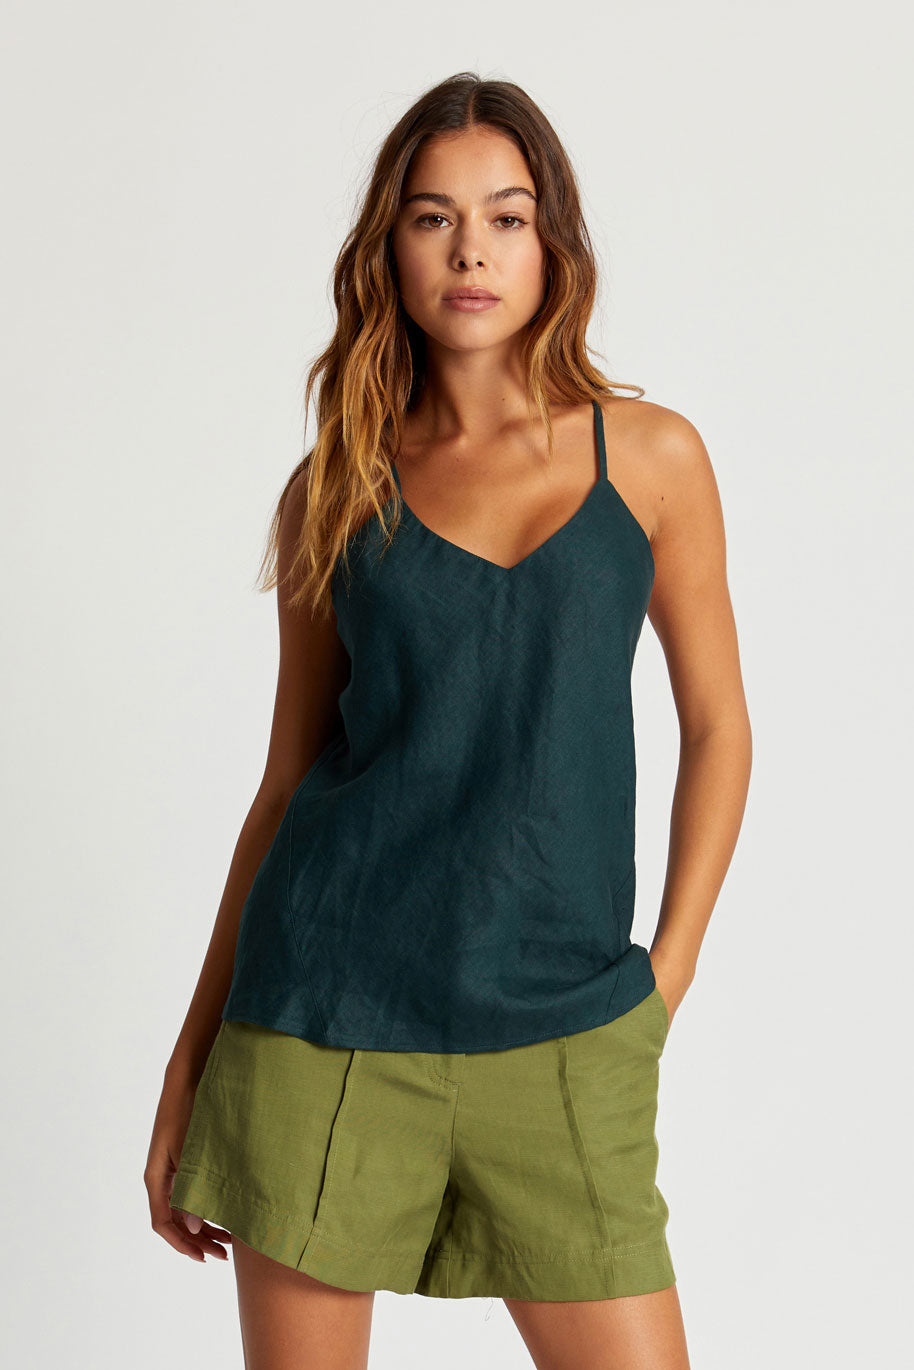 FLEUR Organic Linen Camisole - Teal Green